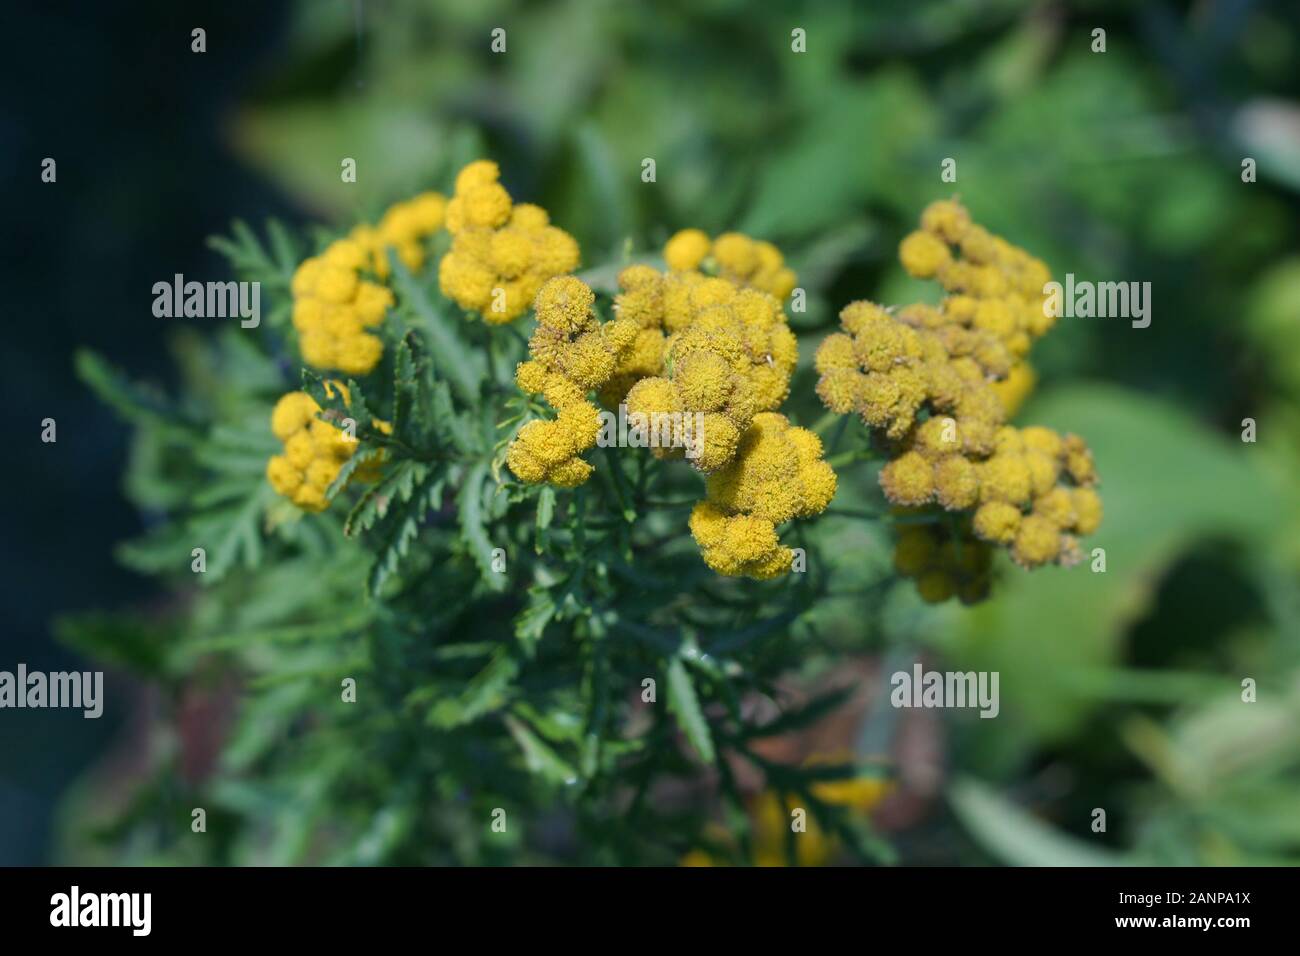 Plantas medicinales Tansy común con pequeñas flores amarillas que crece en el campo, Tanacetum vulgare. Planta de Tansy Foto de stock